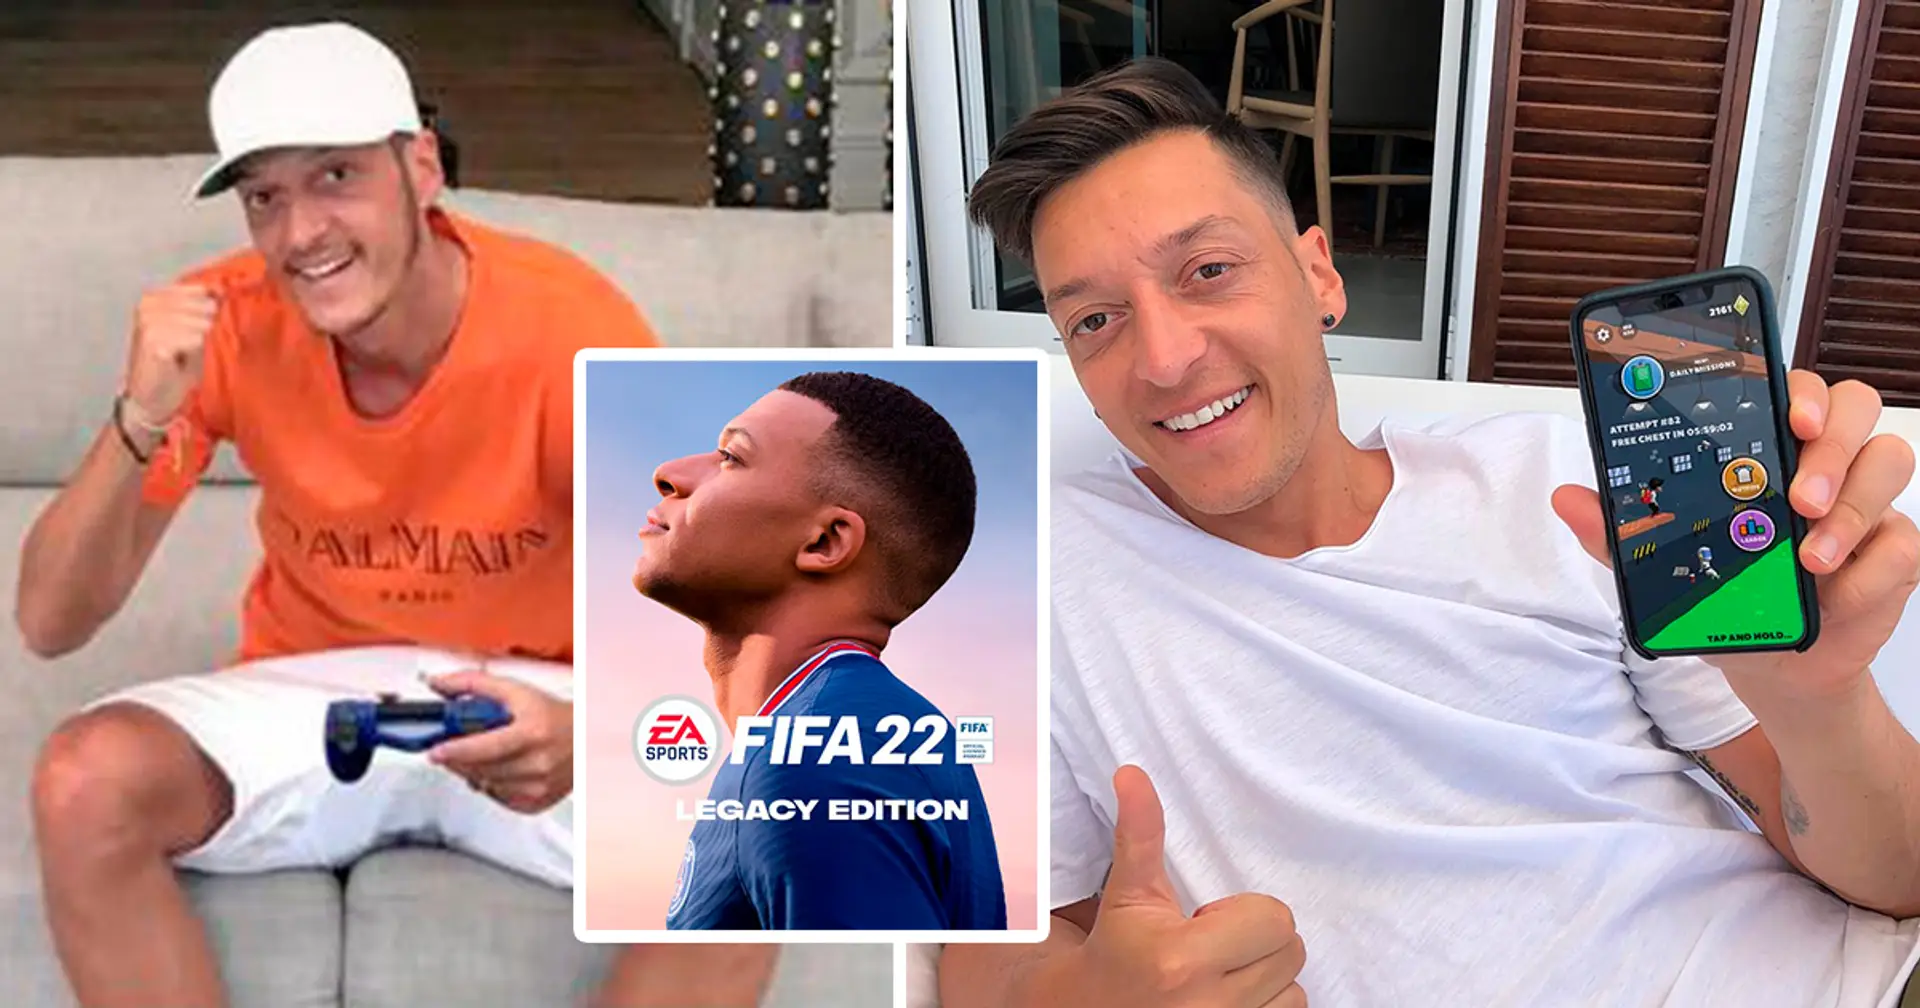 L'agent d'Ozil: "Mesut quittera le football pour devenir un gamer professionnel"